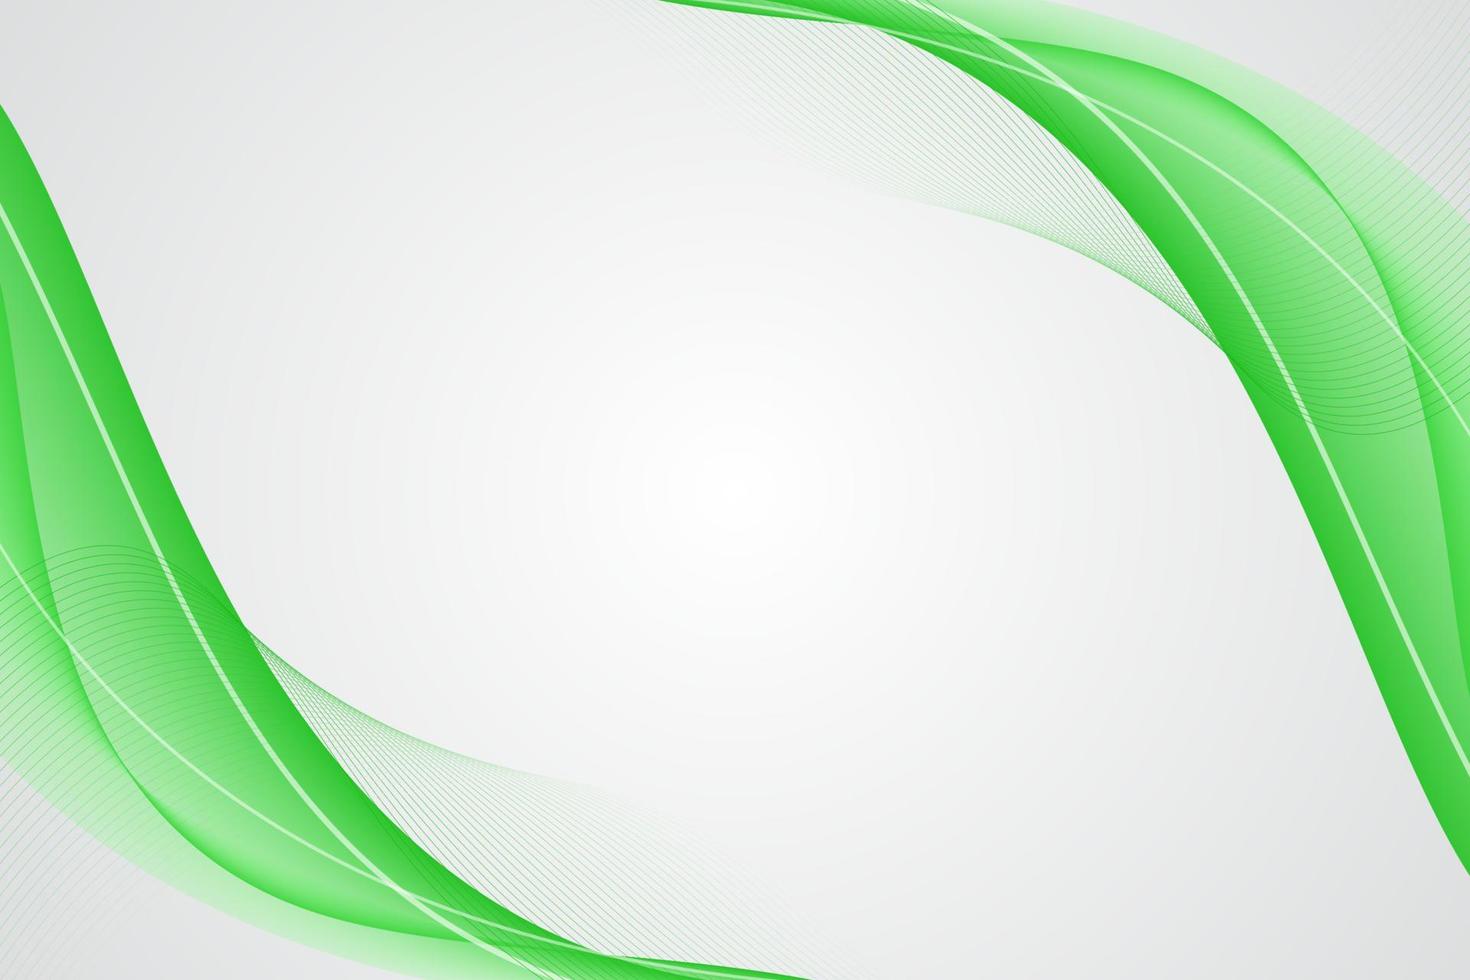 fundo de apresentação minimalista com design de linhas onduladas verdes vetor